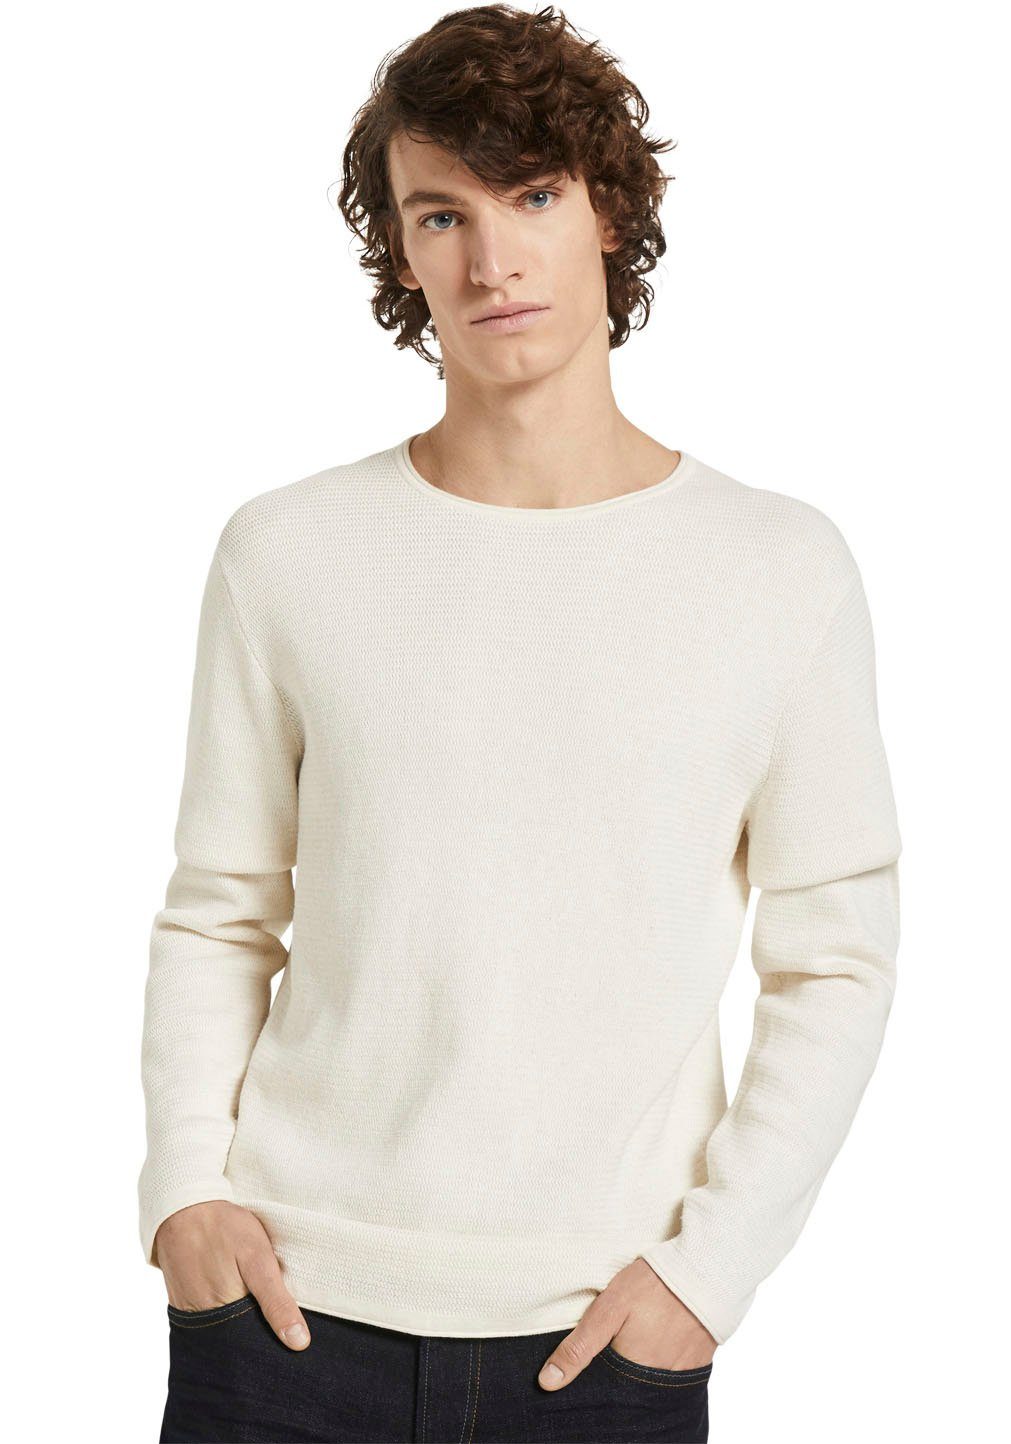 Herren Pullover in weiß online kaufen | OTTO